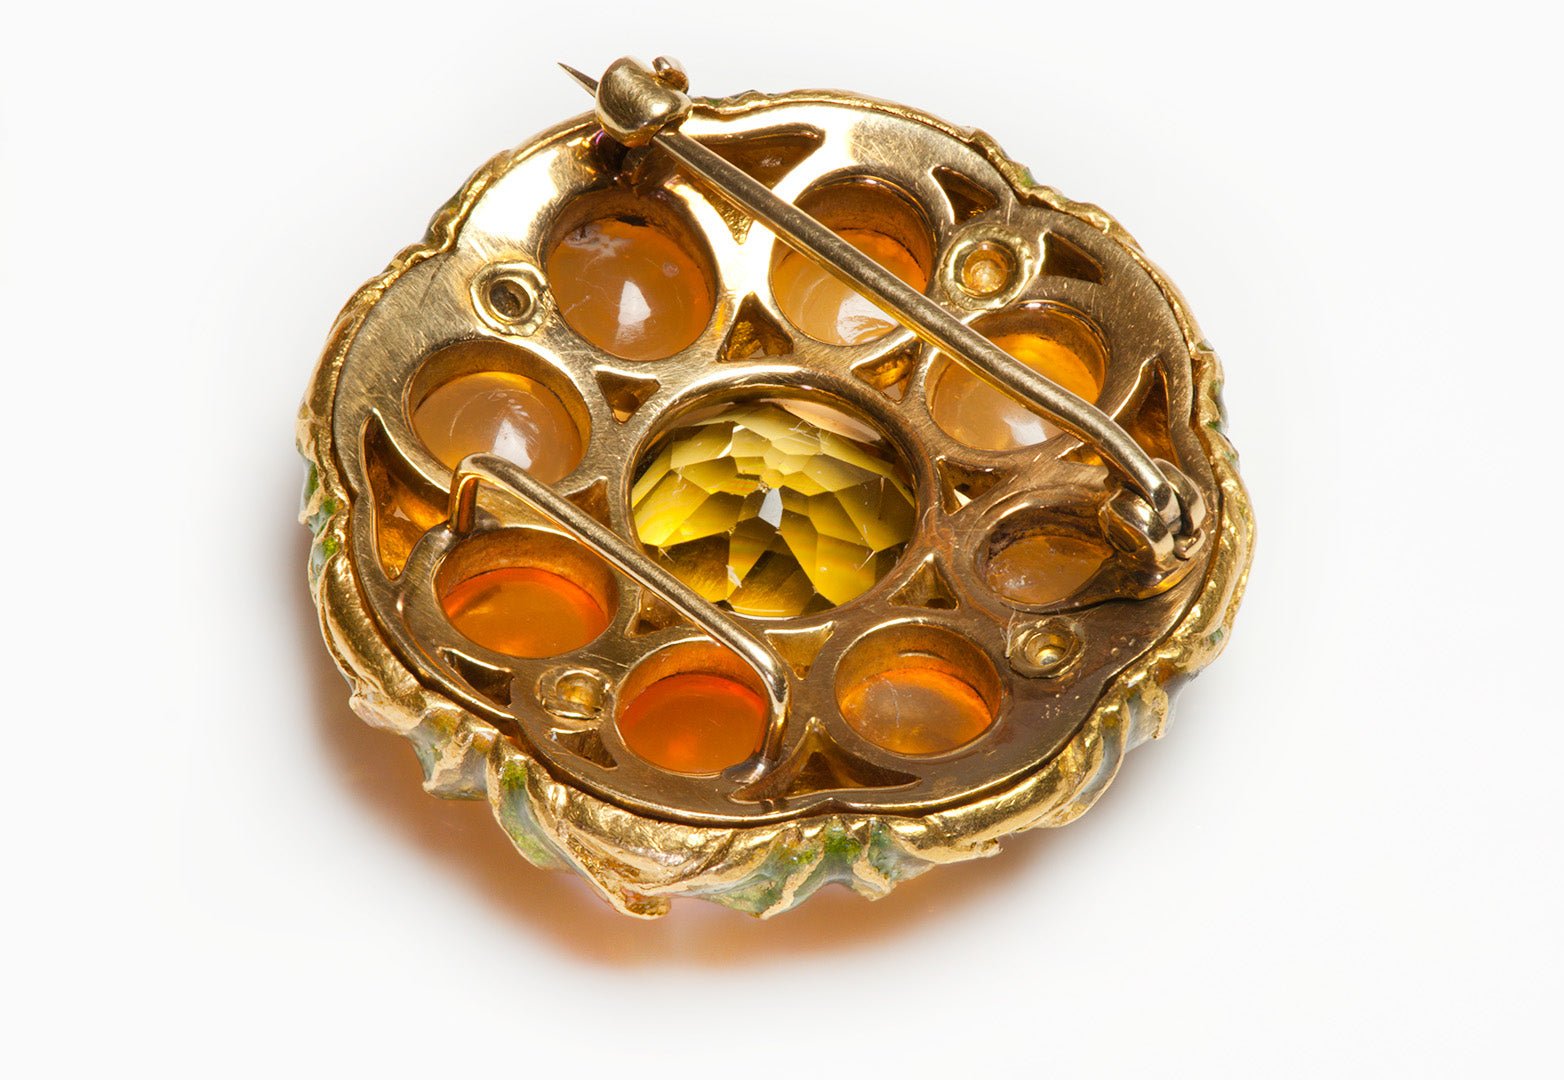 Enamel Gemstone Gold Brooch Attrib. to Louis Comfort Tiffany